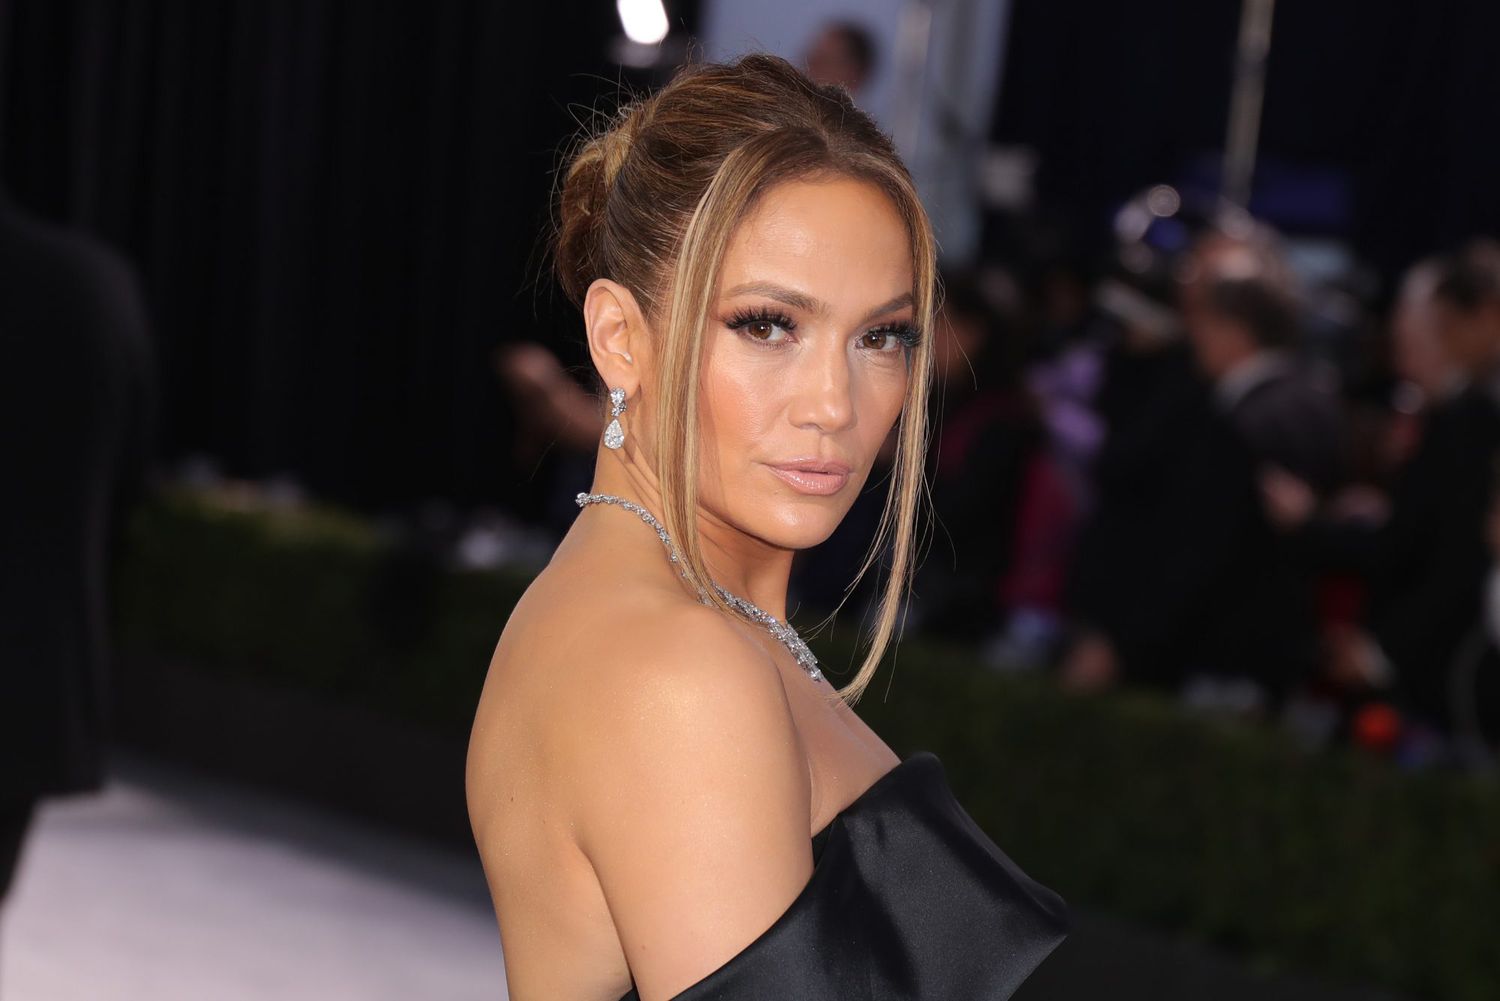 An image of Jennifer Lopez.